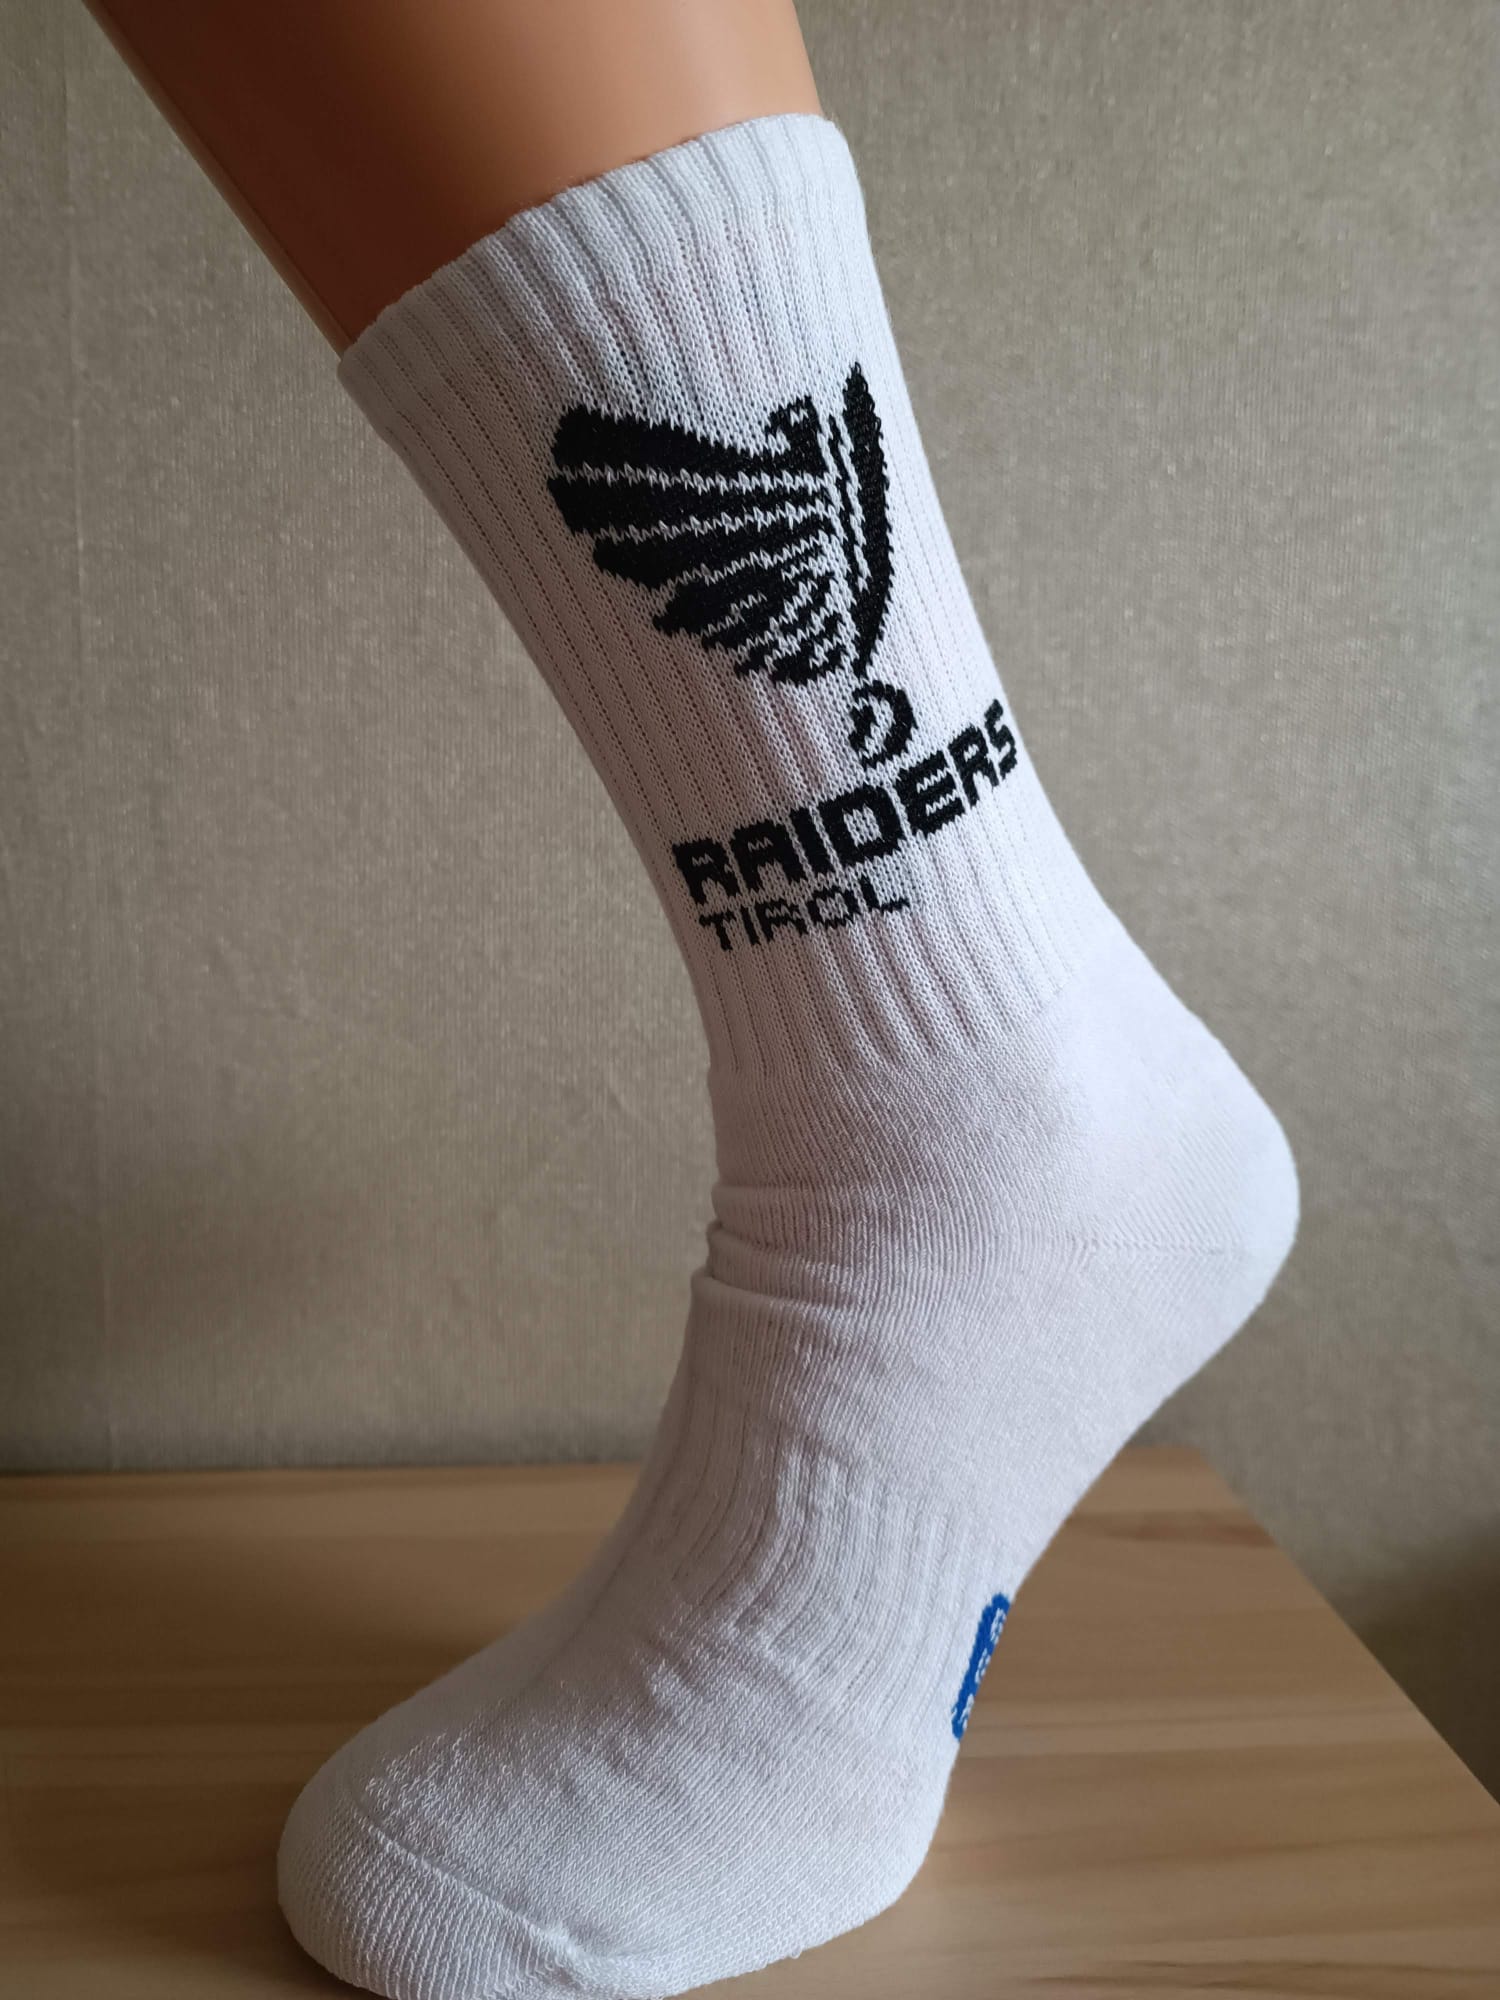 Raiders Tirol Socks